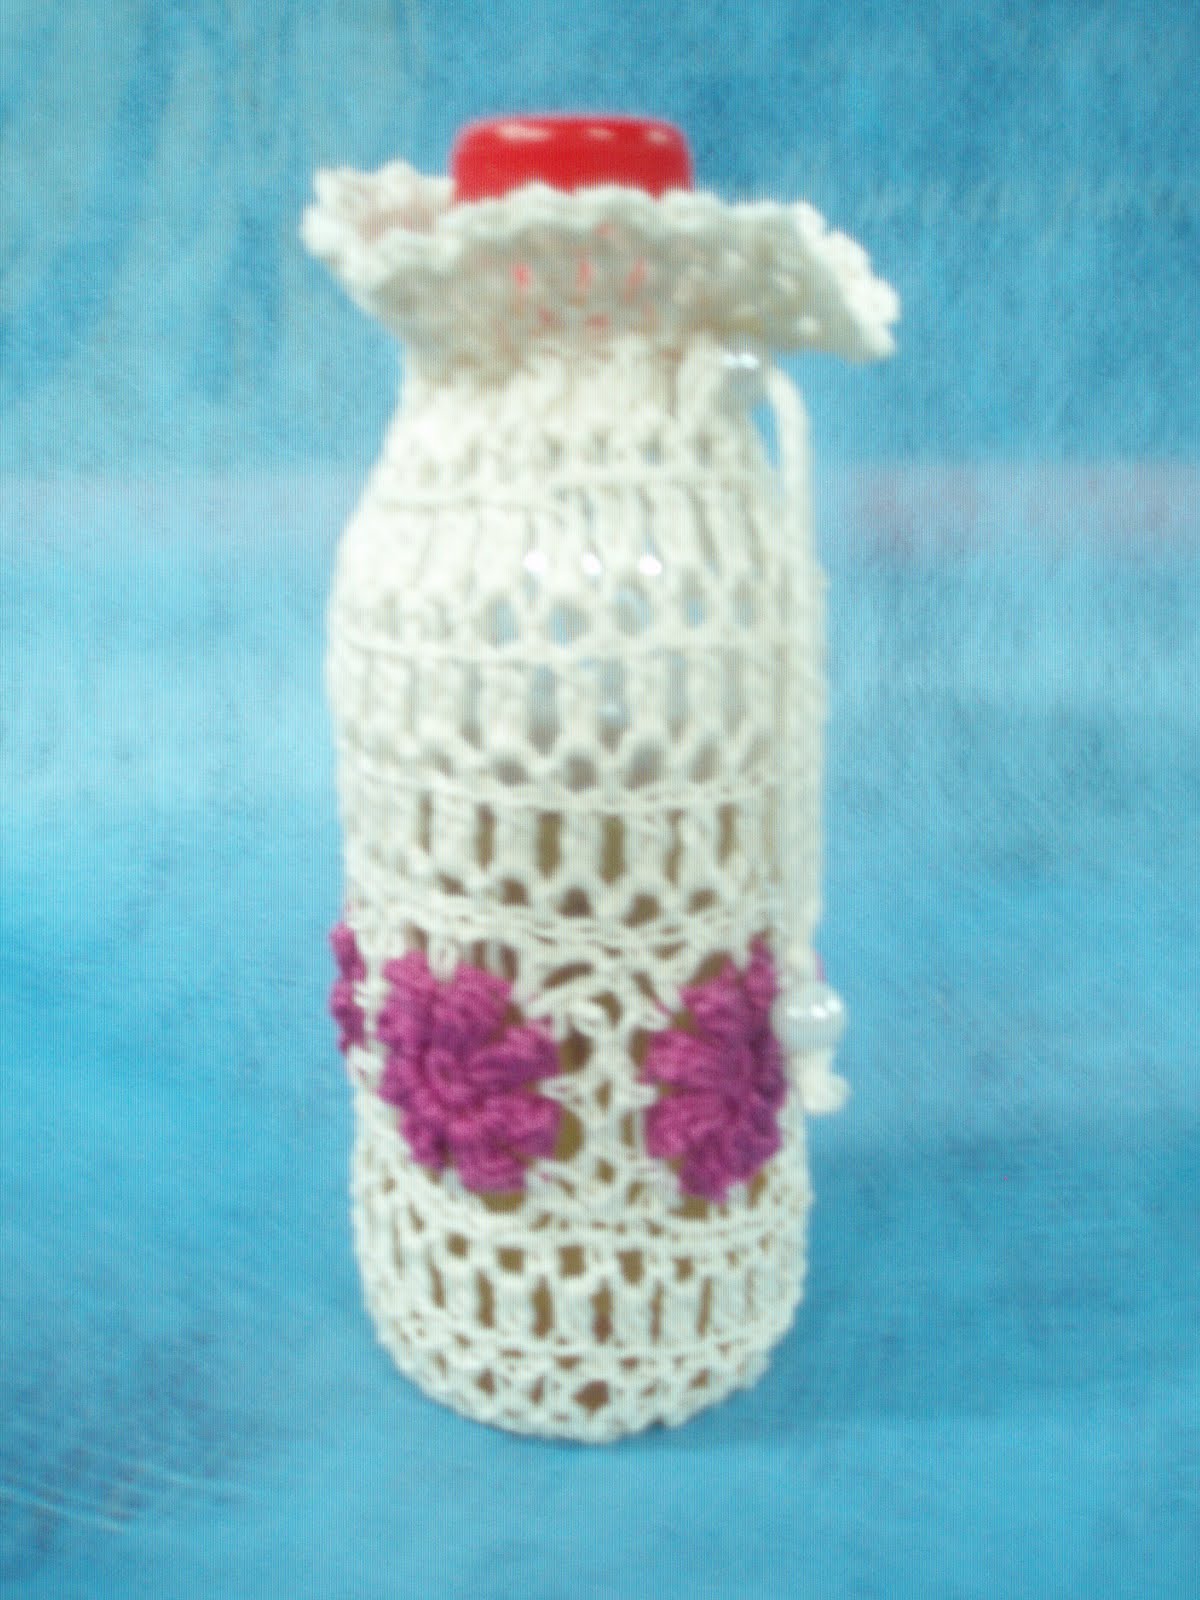 Bernat: Bernat Handicrafter Crochet Cotton - Free Knitting and